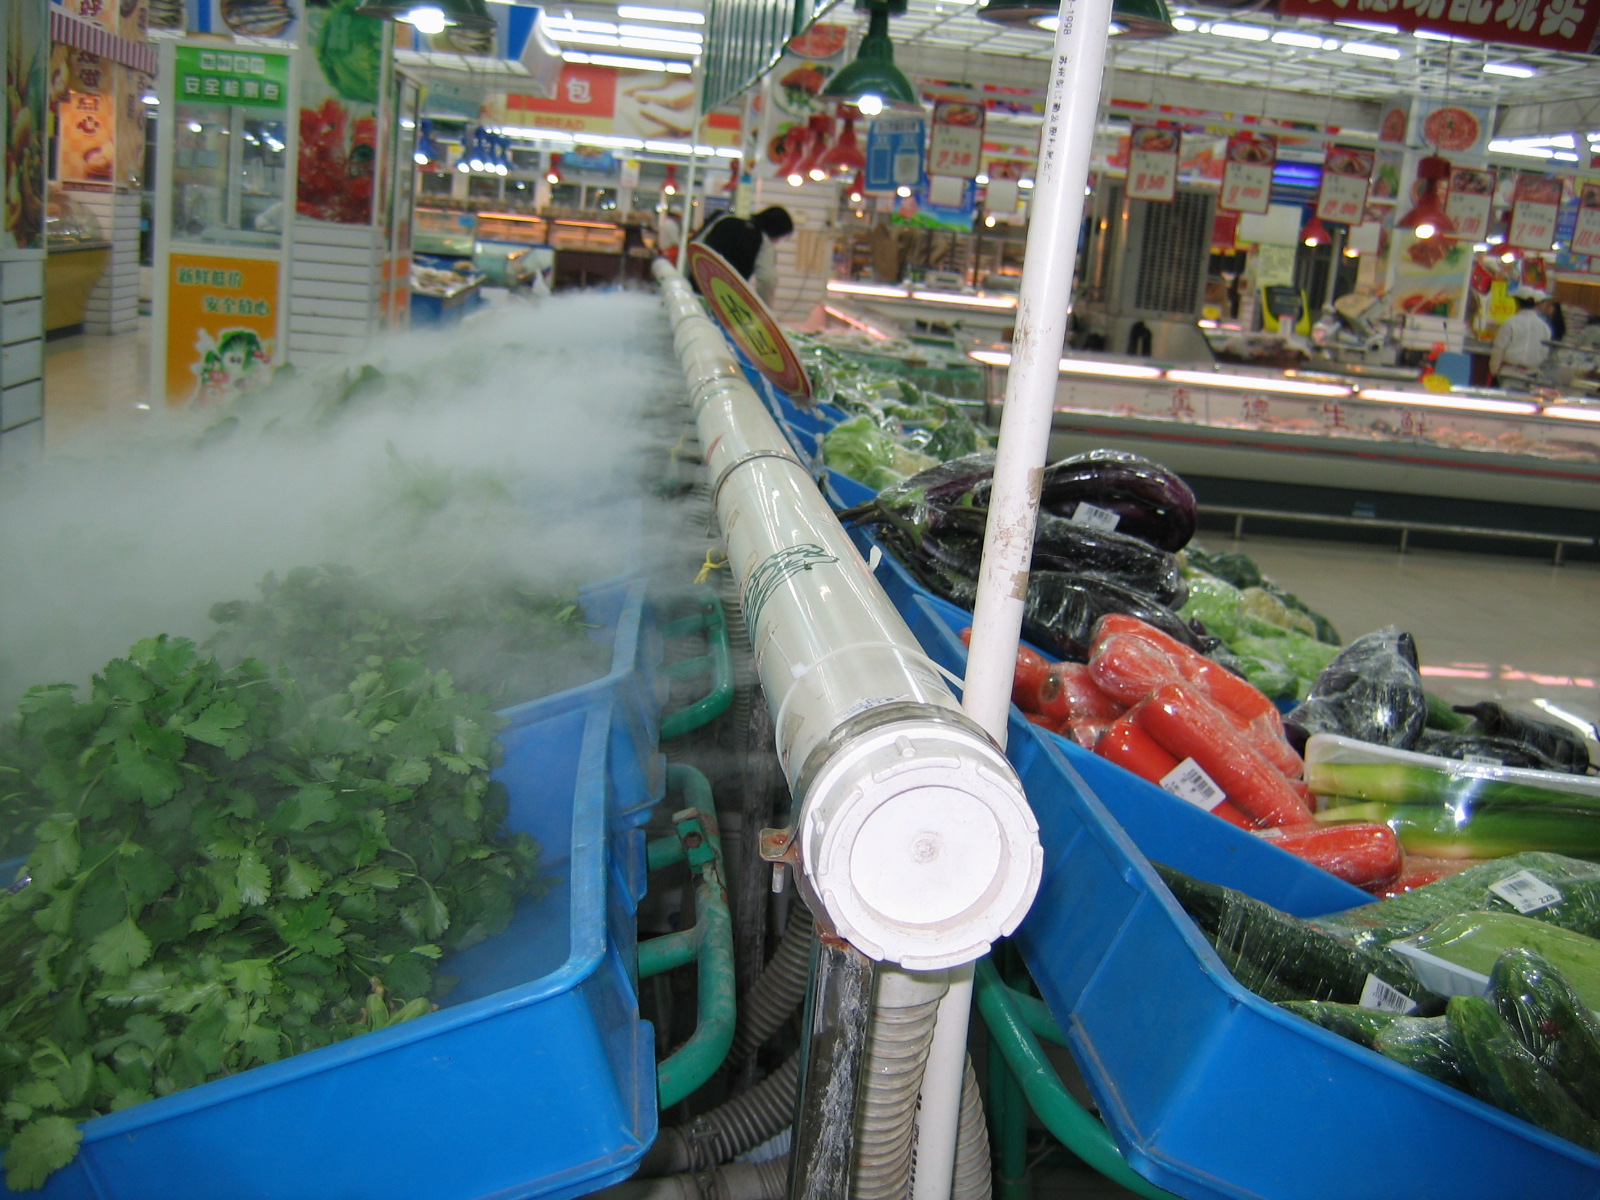 供应蔬菜货架喷雾机供应云南蔬菜货架喷雾机上海厂家图片